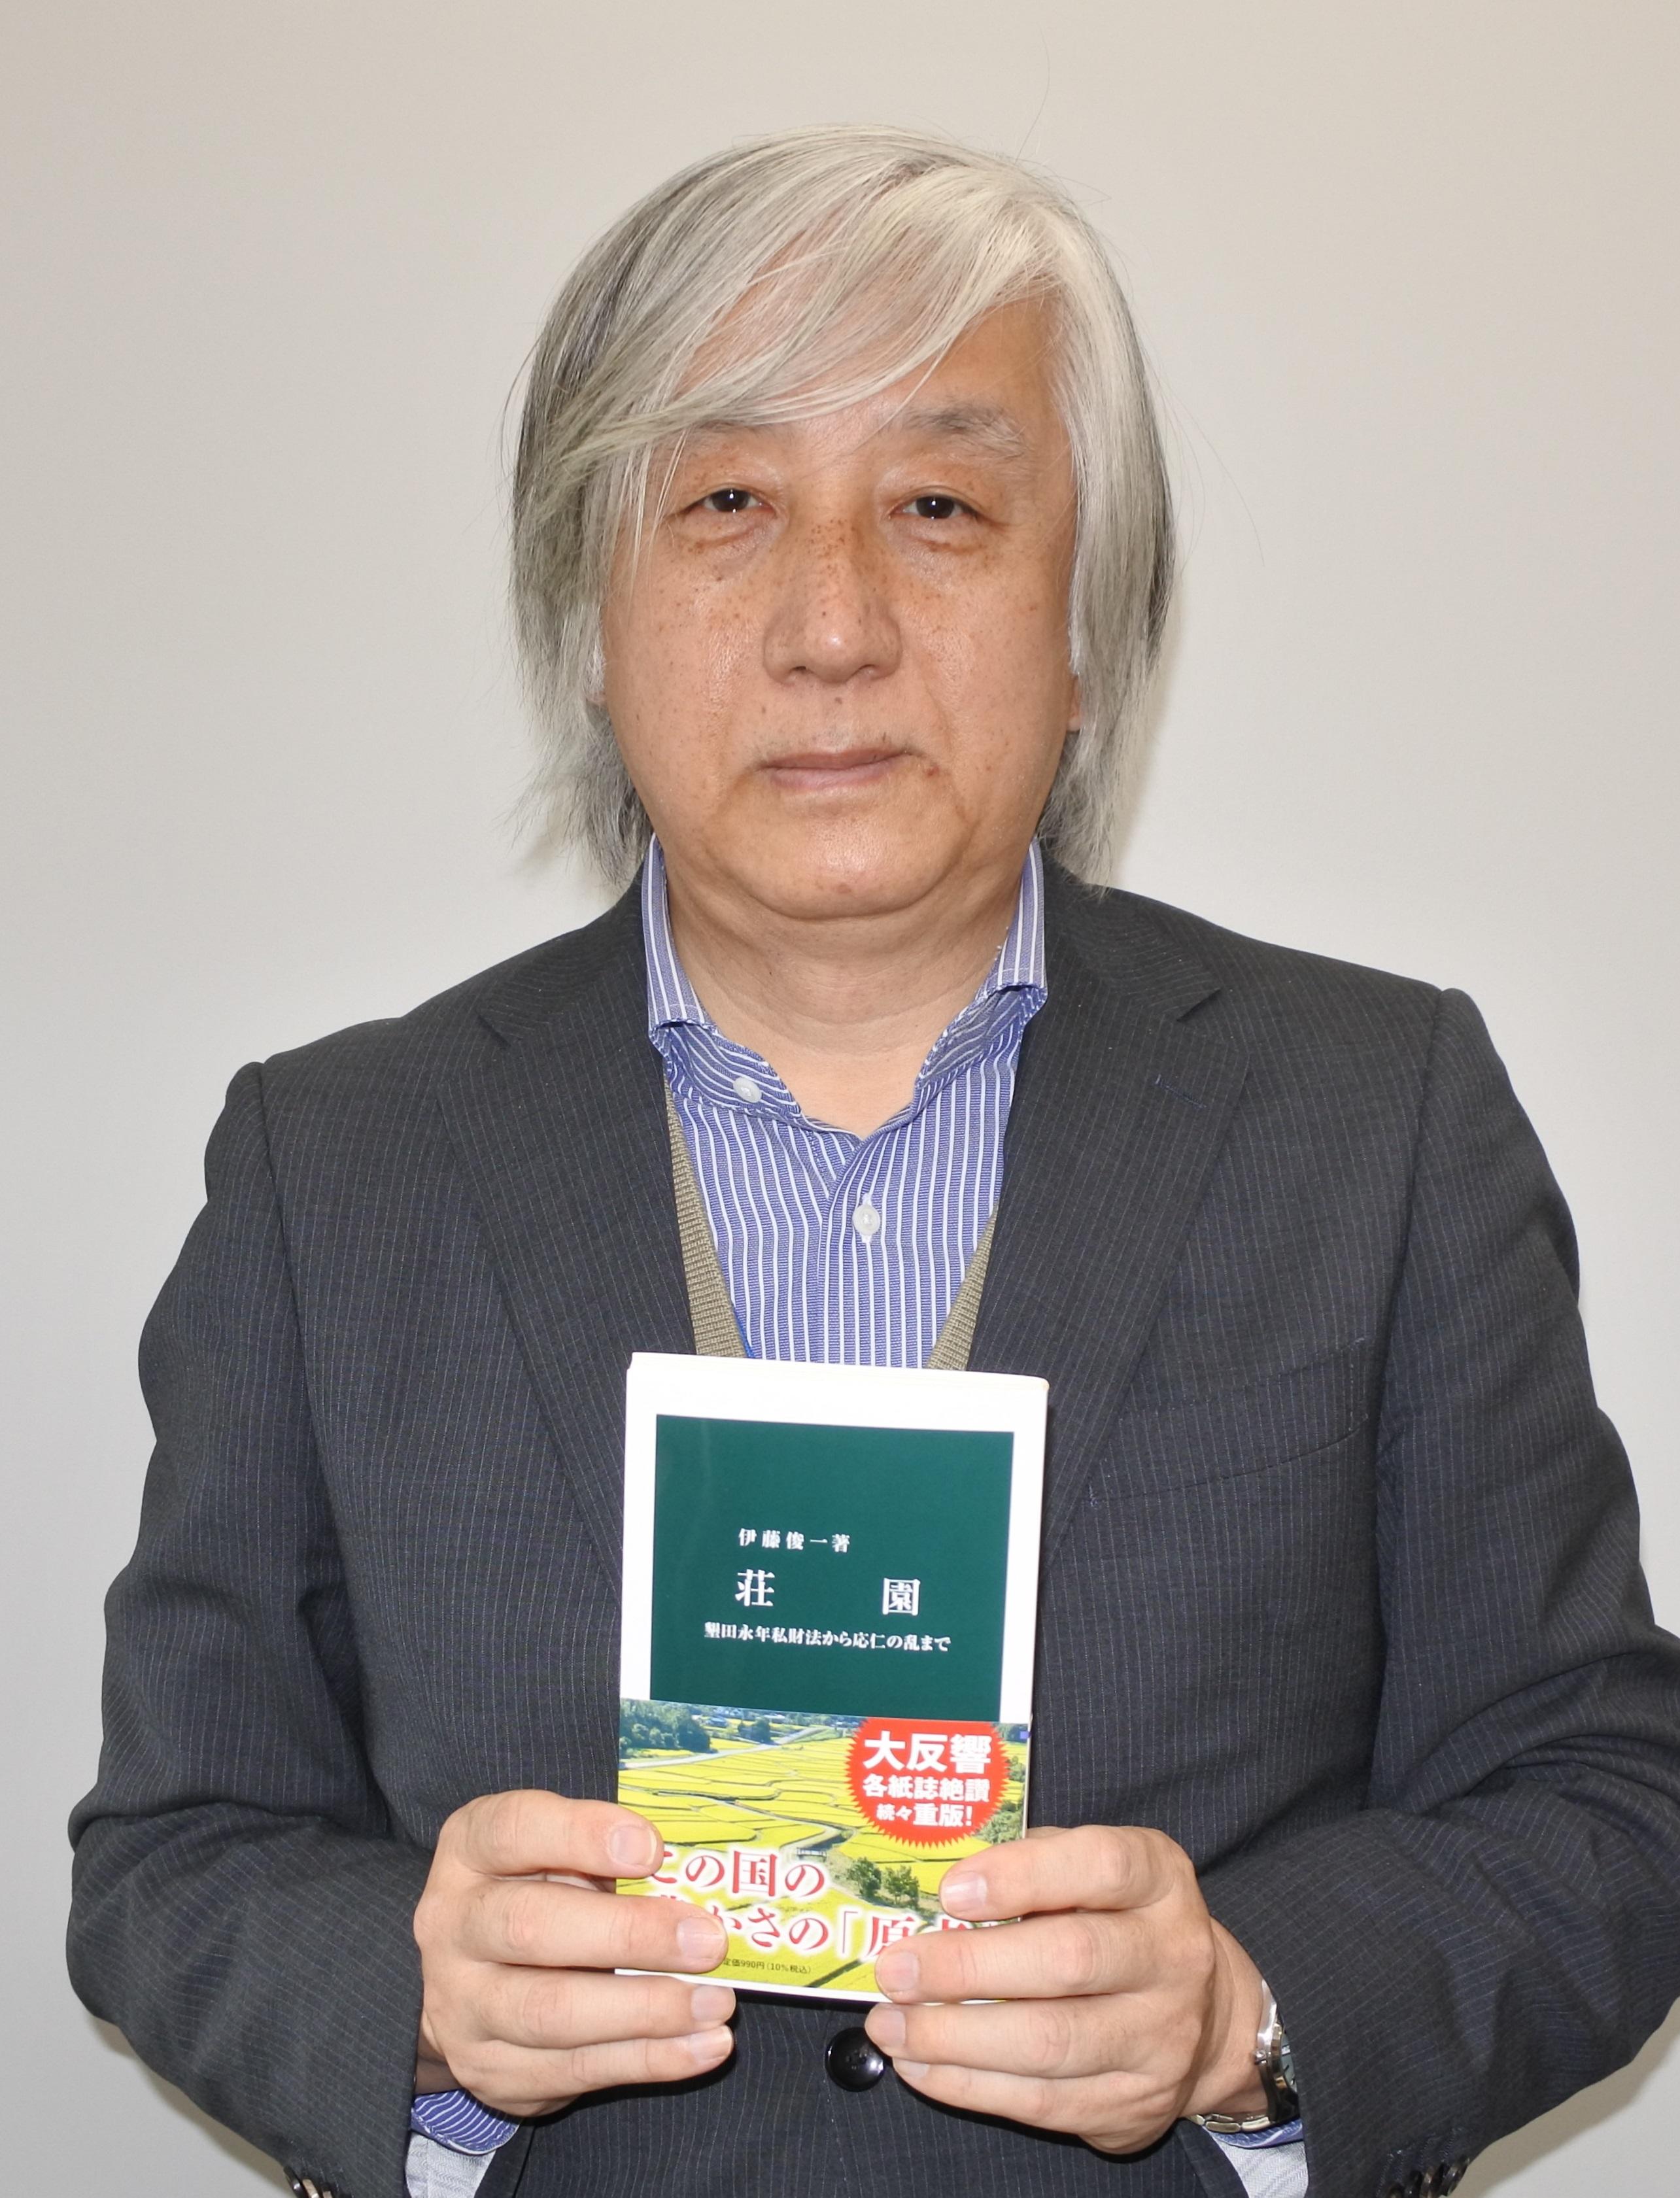 名城大学人間学部の伊藤俊一教授（日本中世史）の著書『荘園　墾田永年私財法から応仁の乱まで』が「新書大賞2022」の3位に選ばれました